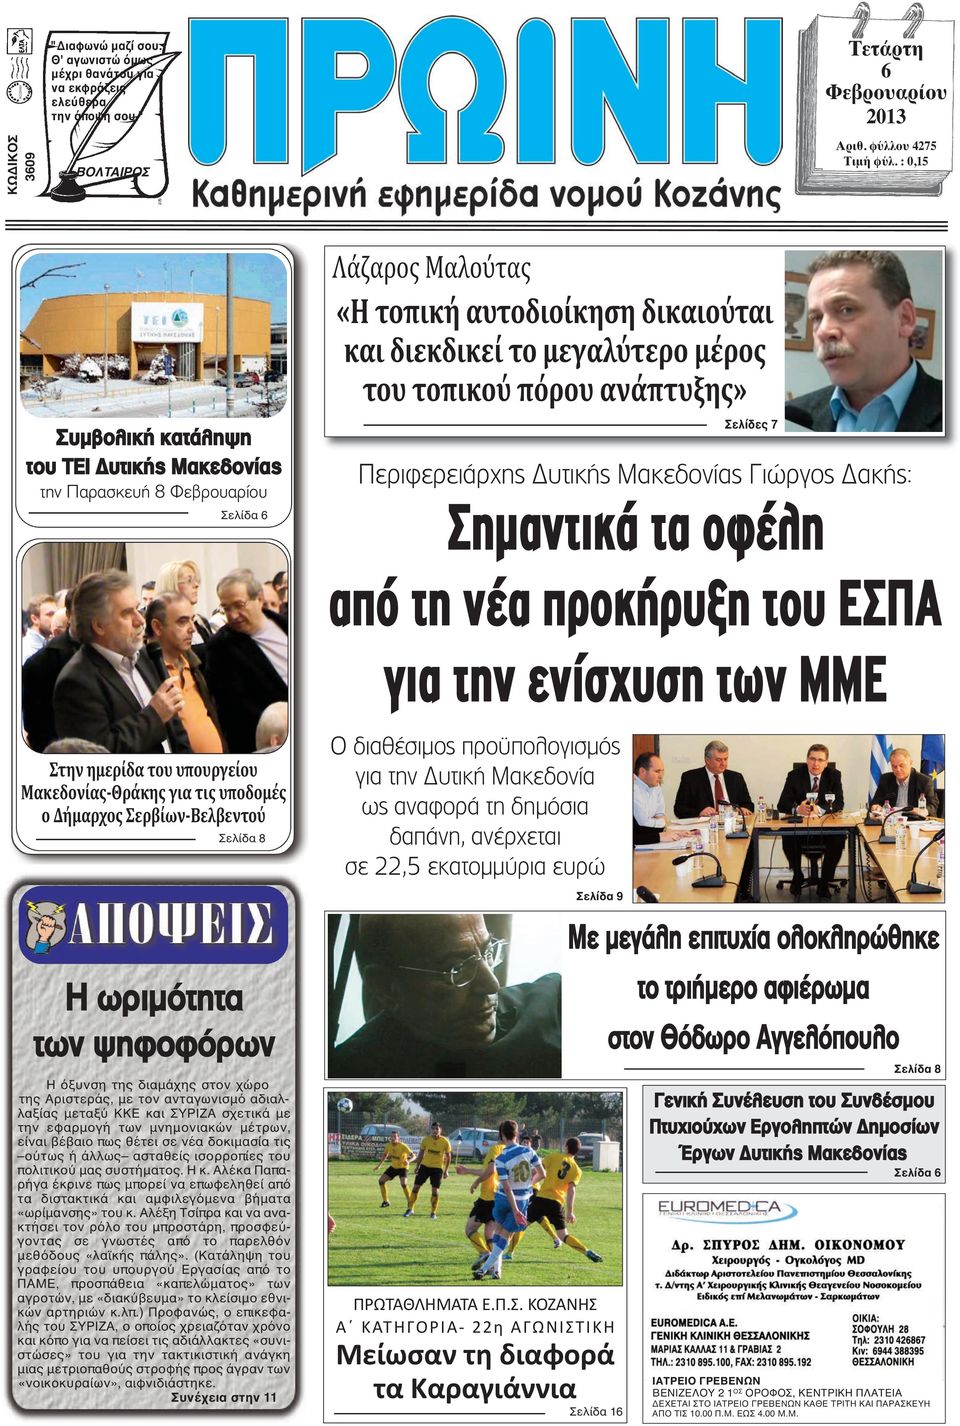 ανάπτυξης» Σελίδες 7 Περιφερειάρχης Δυτικής Μακεδονίας Γιώργος Δακής: Σηµαντικά τα οφέλη από τη νέα προκήρυξη του ΕΣΠΑ για την ενίσχυση των ΜΜΕ Στην ημερίδα του υπουργείου Μακεδονίας-Θράκης για τις